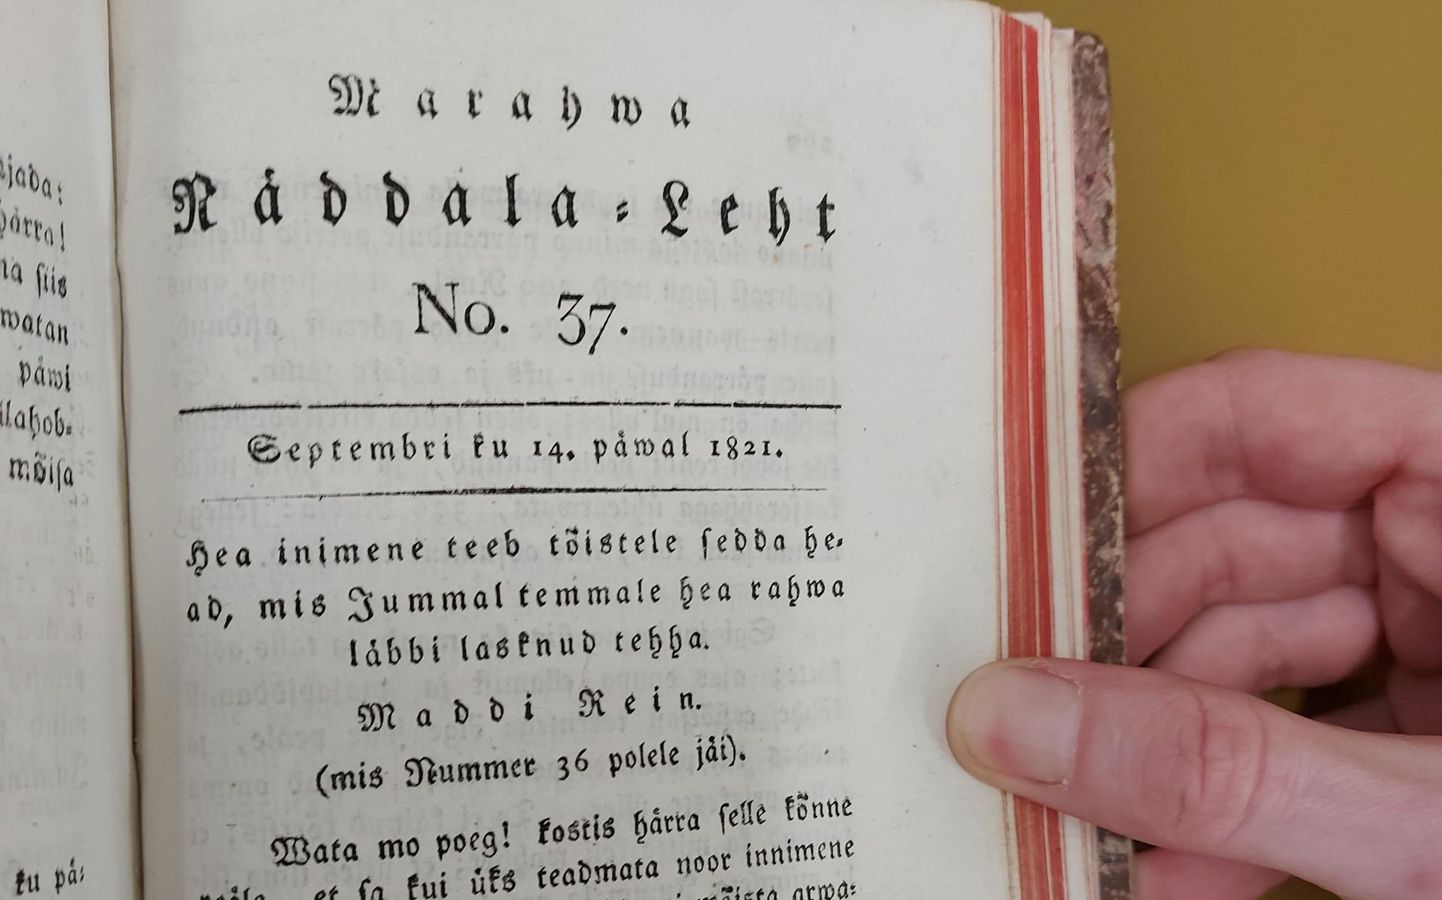 Marahwa Näddala-Leht nr 37. Päismikku on trükitud ilmumise kuupäevaks 14. september 1821. Köide asub Tartu ülikooli raamatukogus.
 